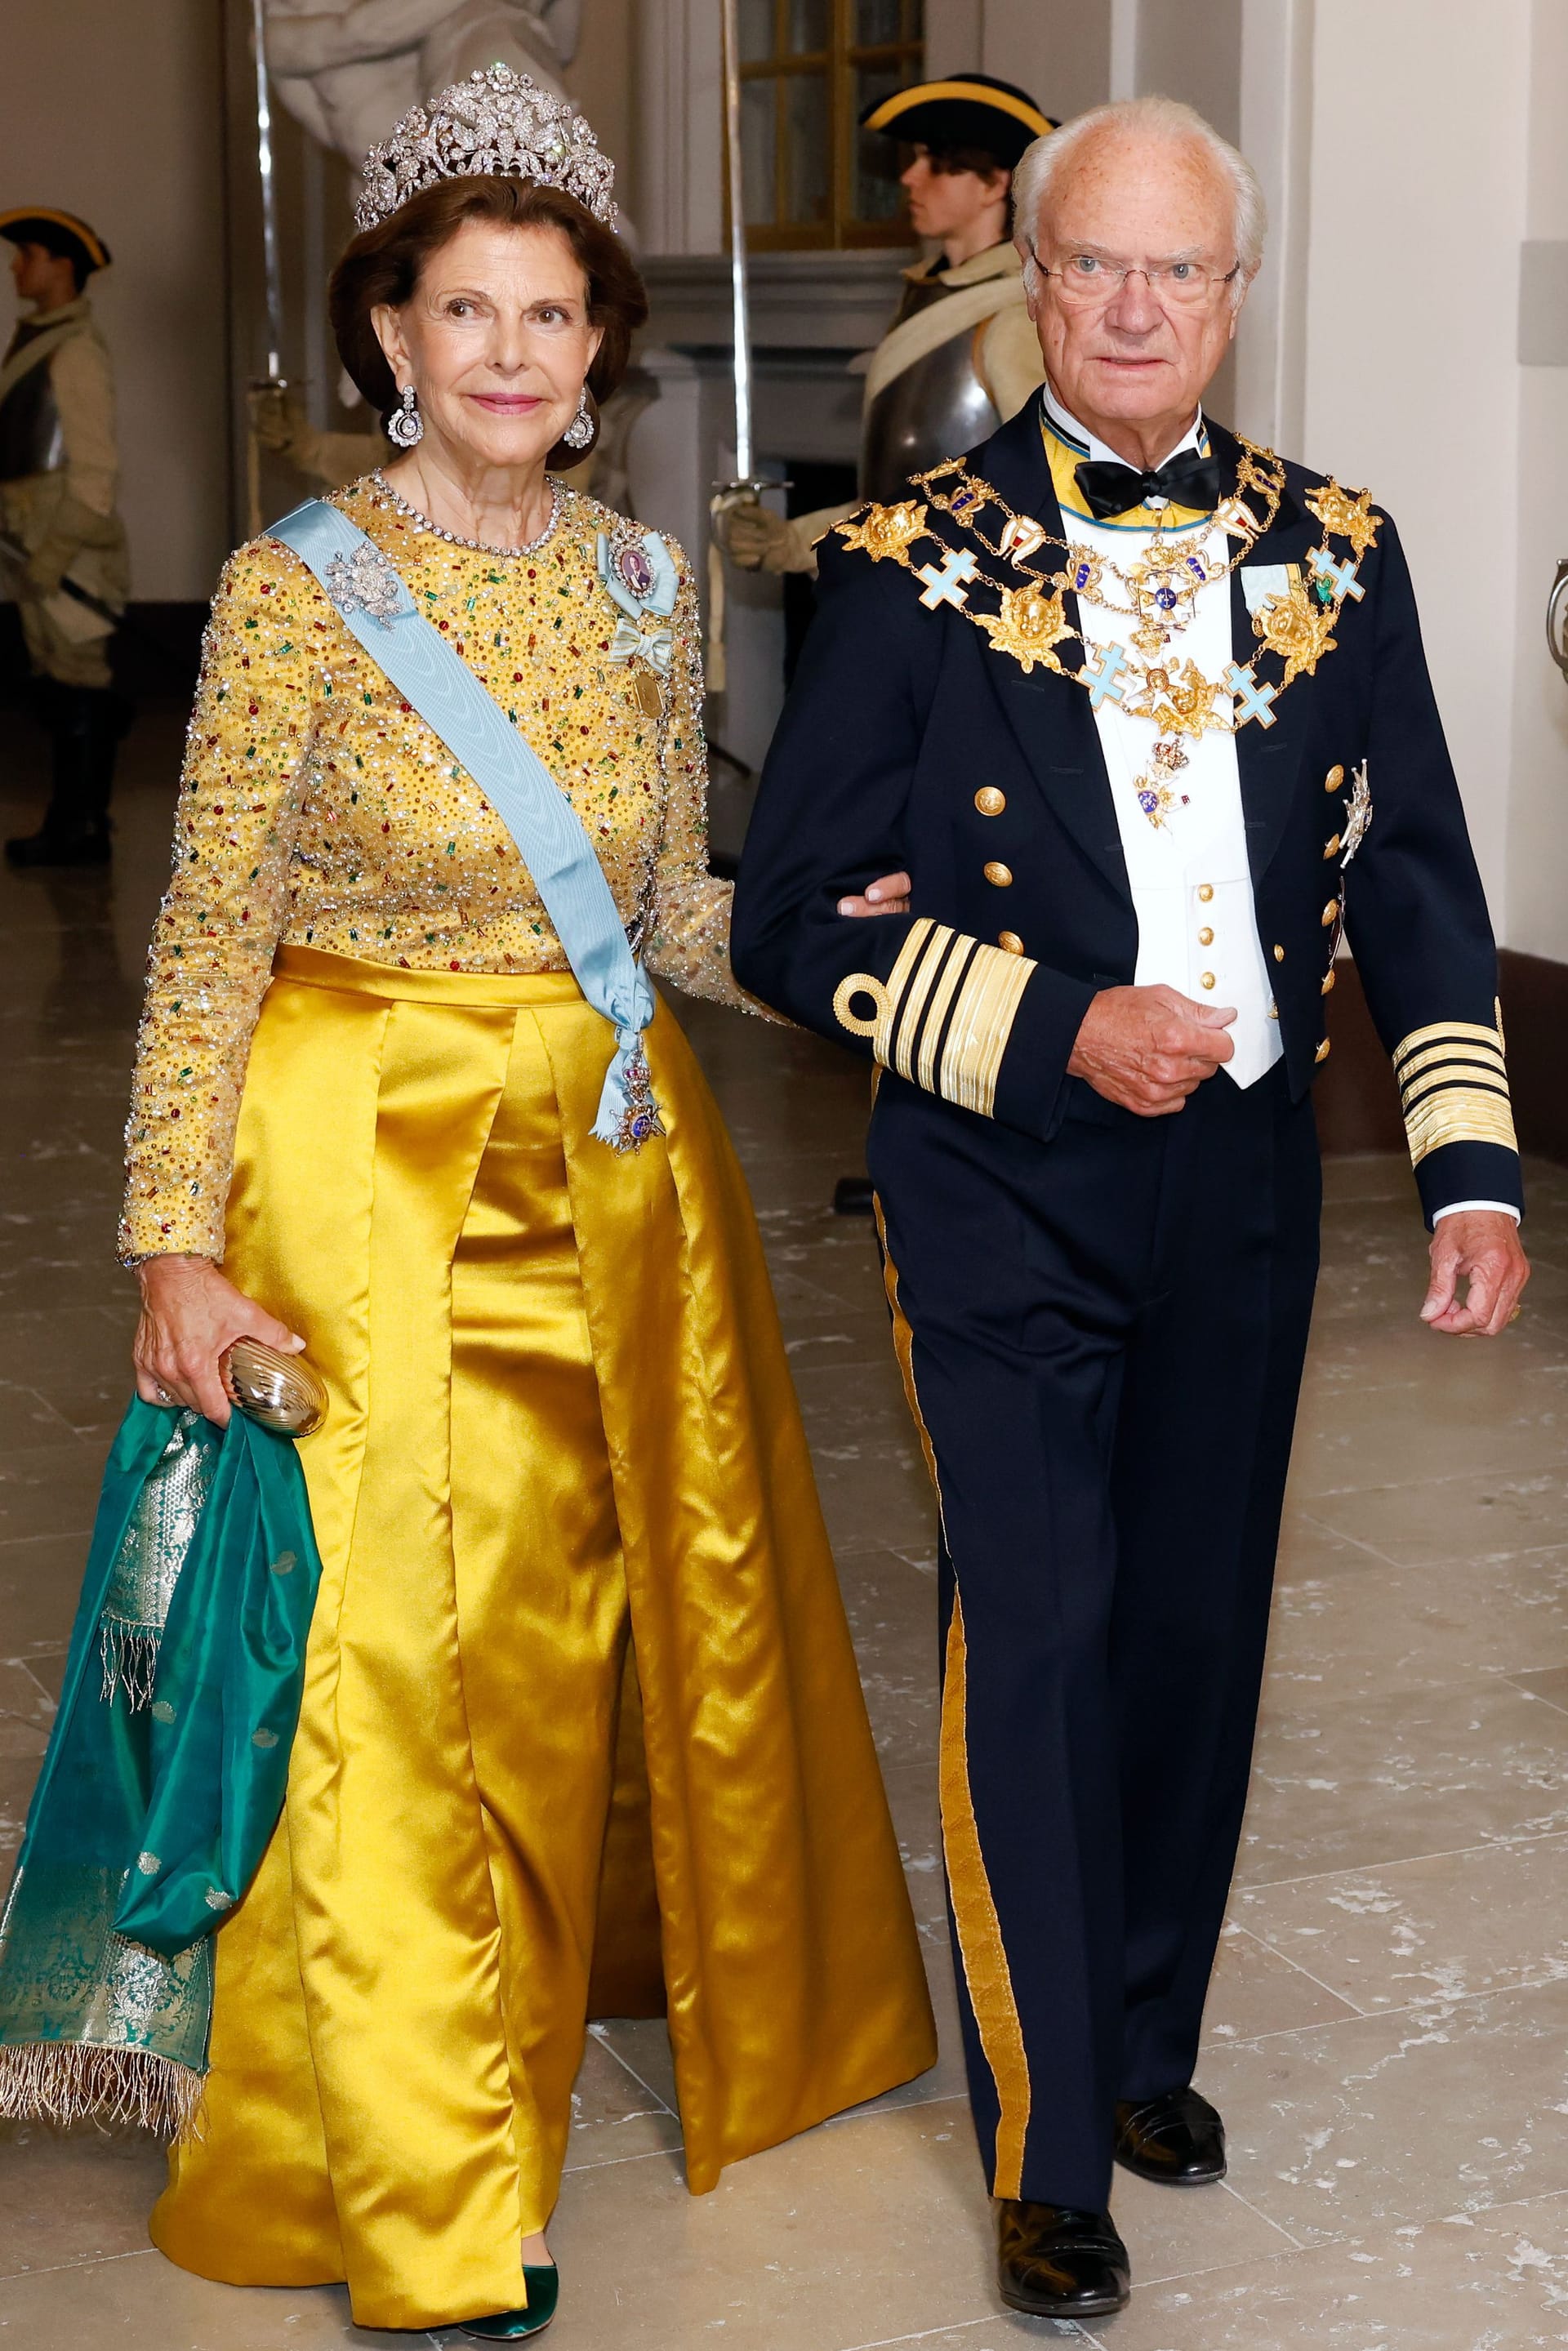 Königin Silvia König Carl XVI Gustaf of Sweden in edler Kleidung.